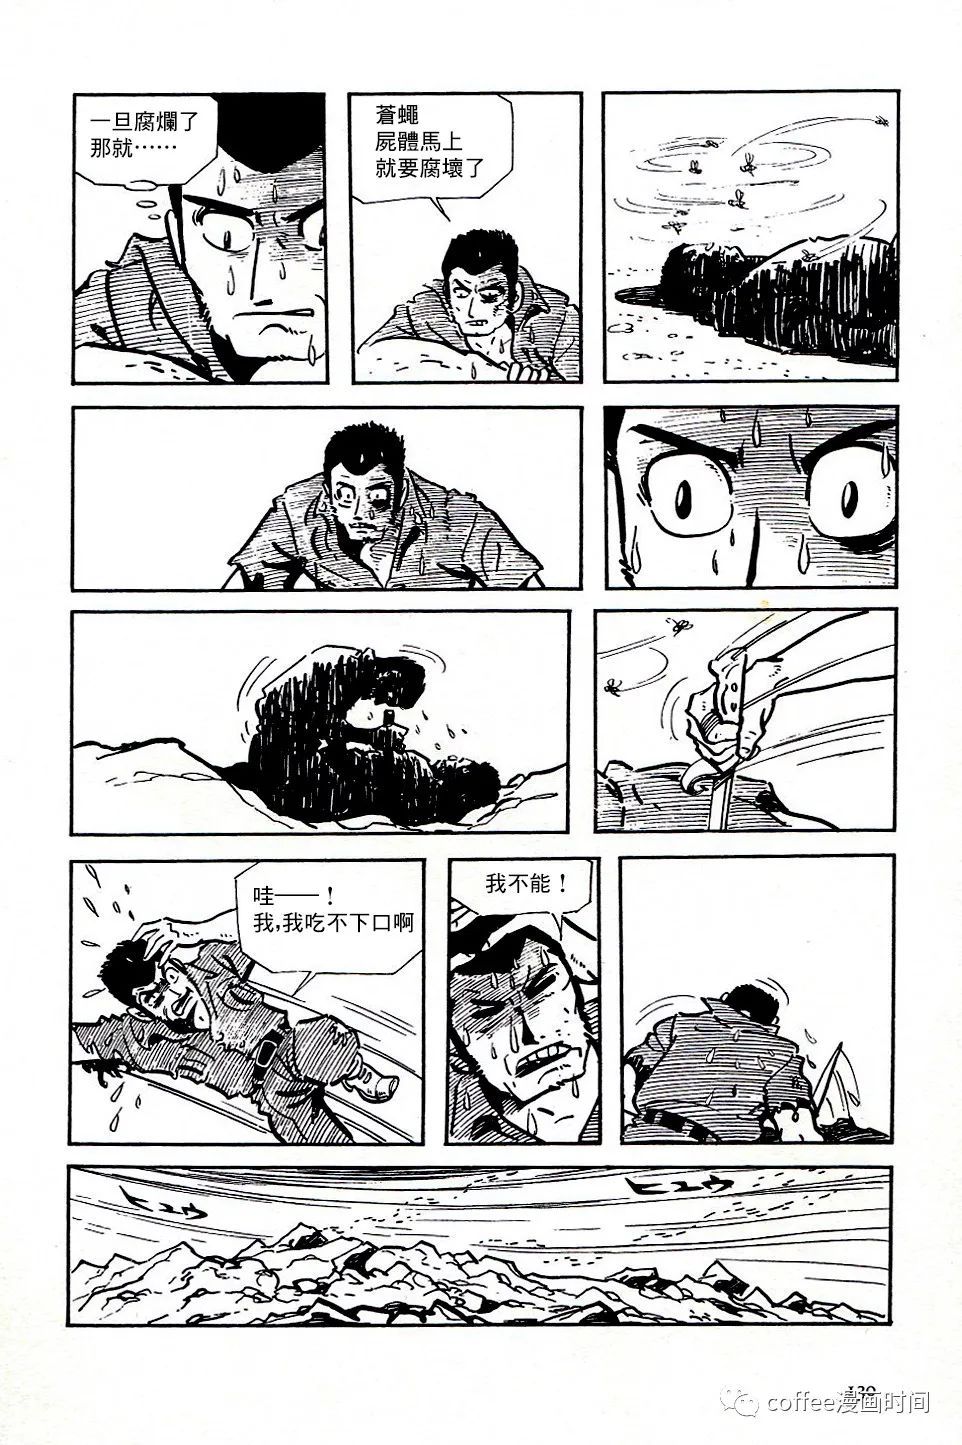 日本短篇漫畫傑作集 - 白土三平《戰爭》 - 6